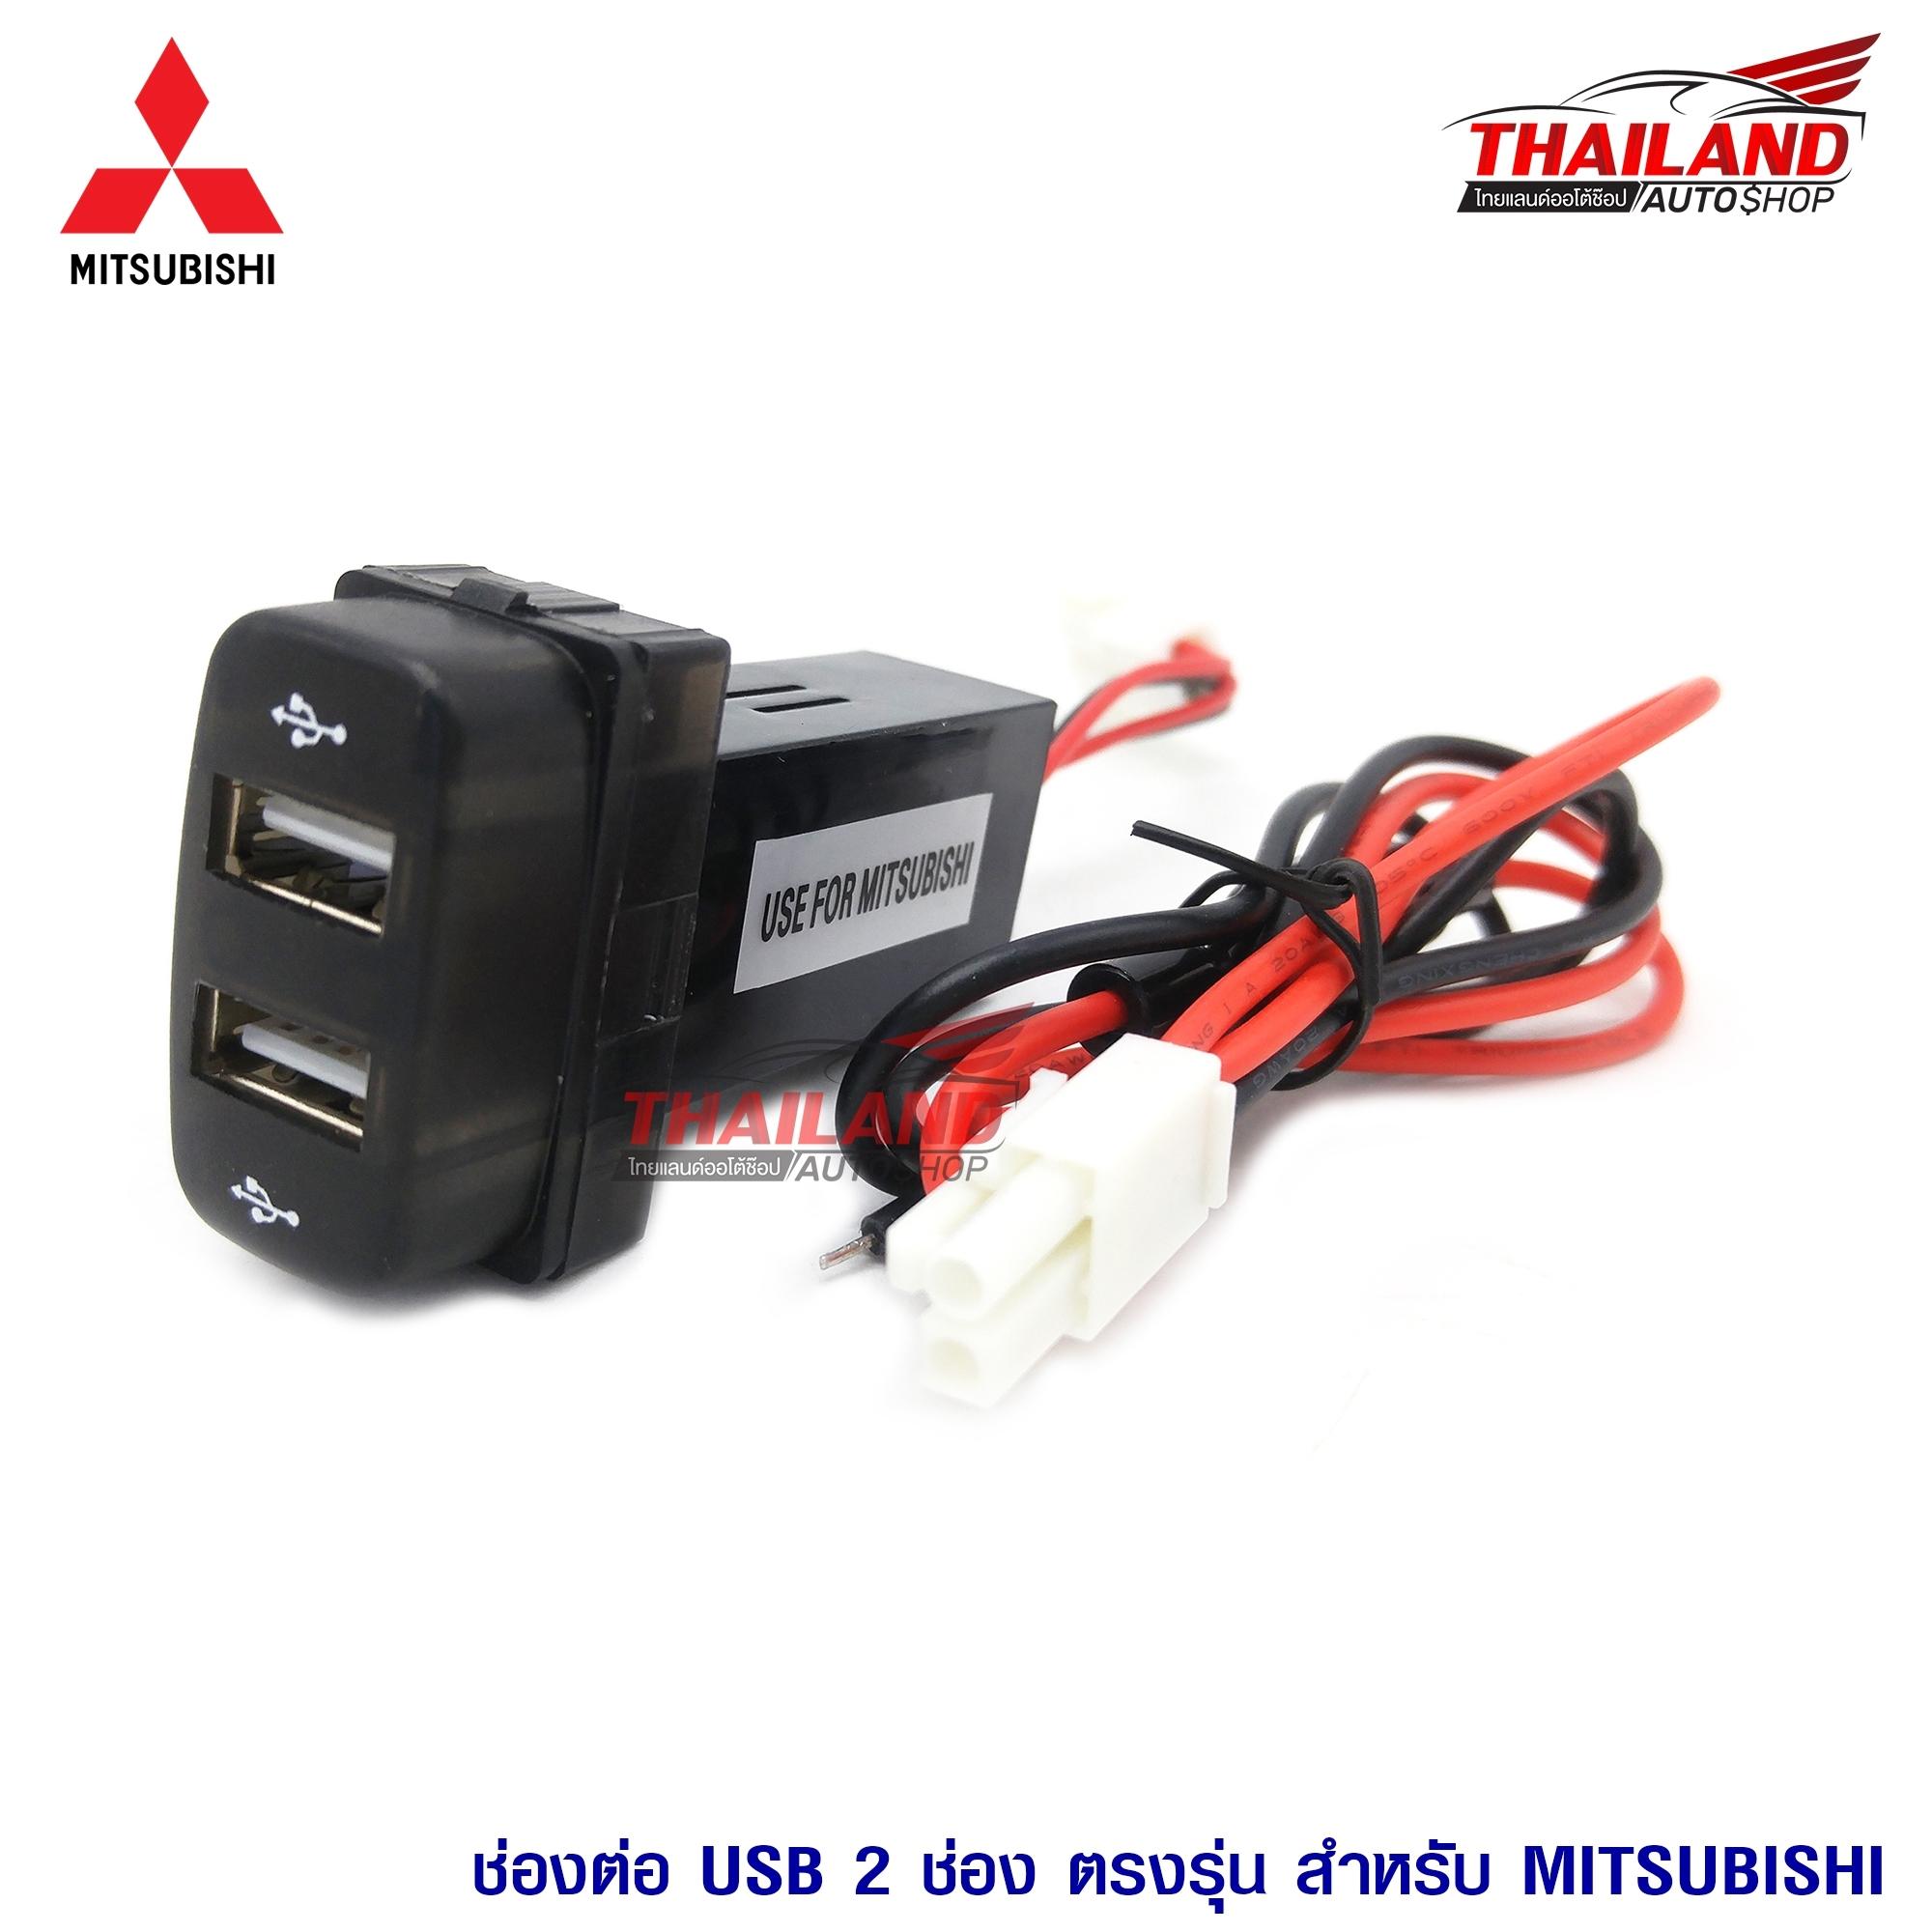 ช่องต่อ USB 2 ช่อง สำหรับ Mitsubishi Triton / Pajaro 2005-2014 แพ็ค 1 อัน